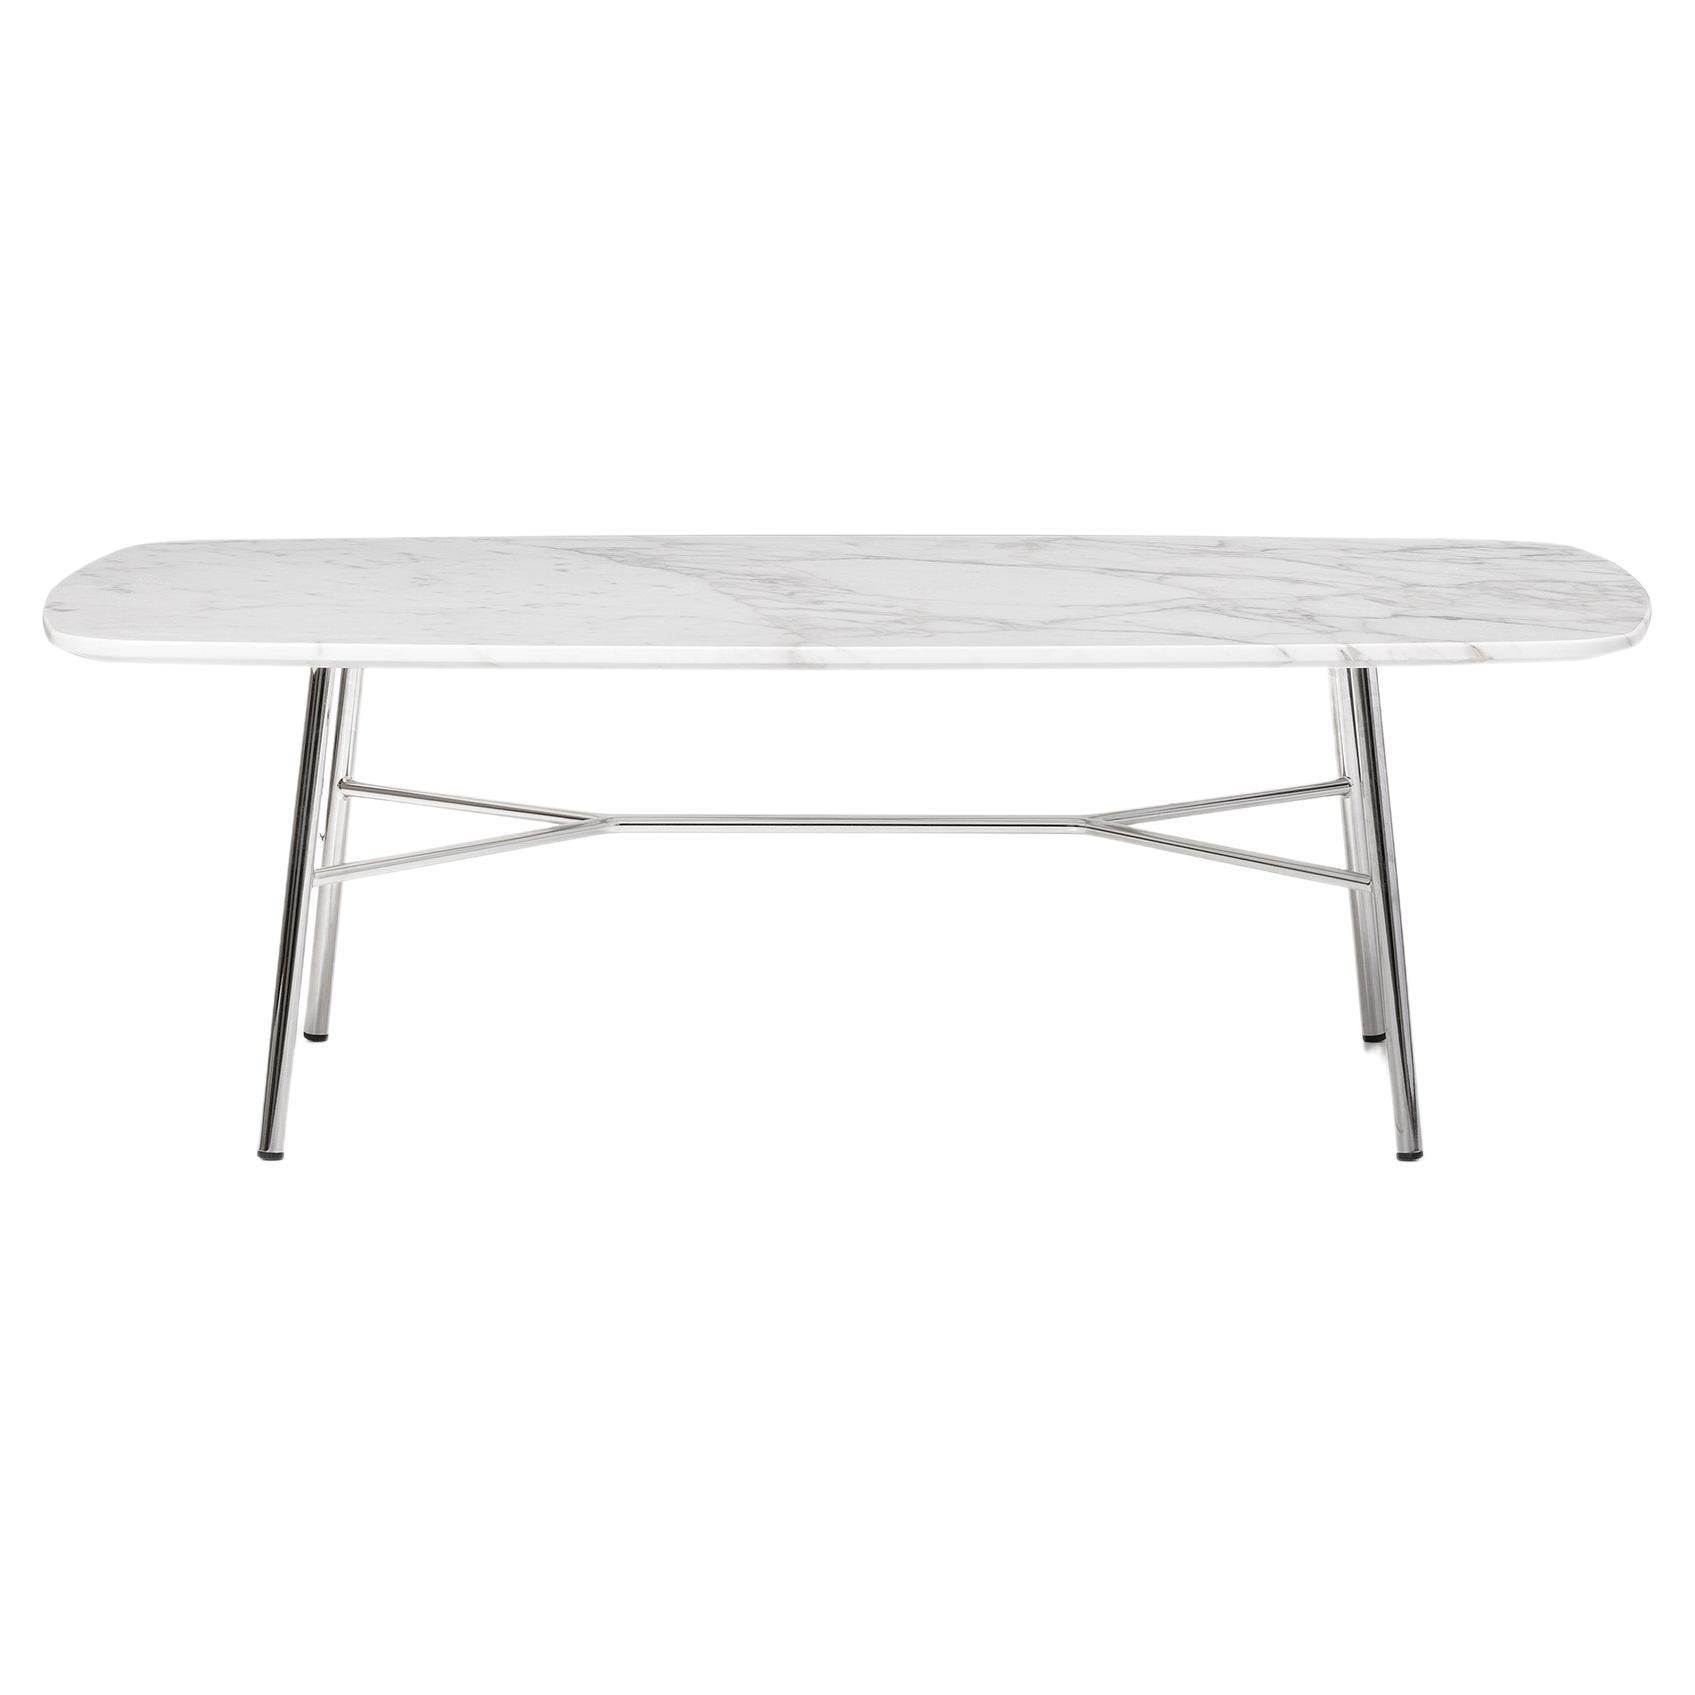 Petite table Yuki, cadre en métal, couleur blanche, design, table basse, verre, marbre